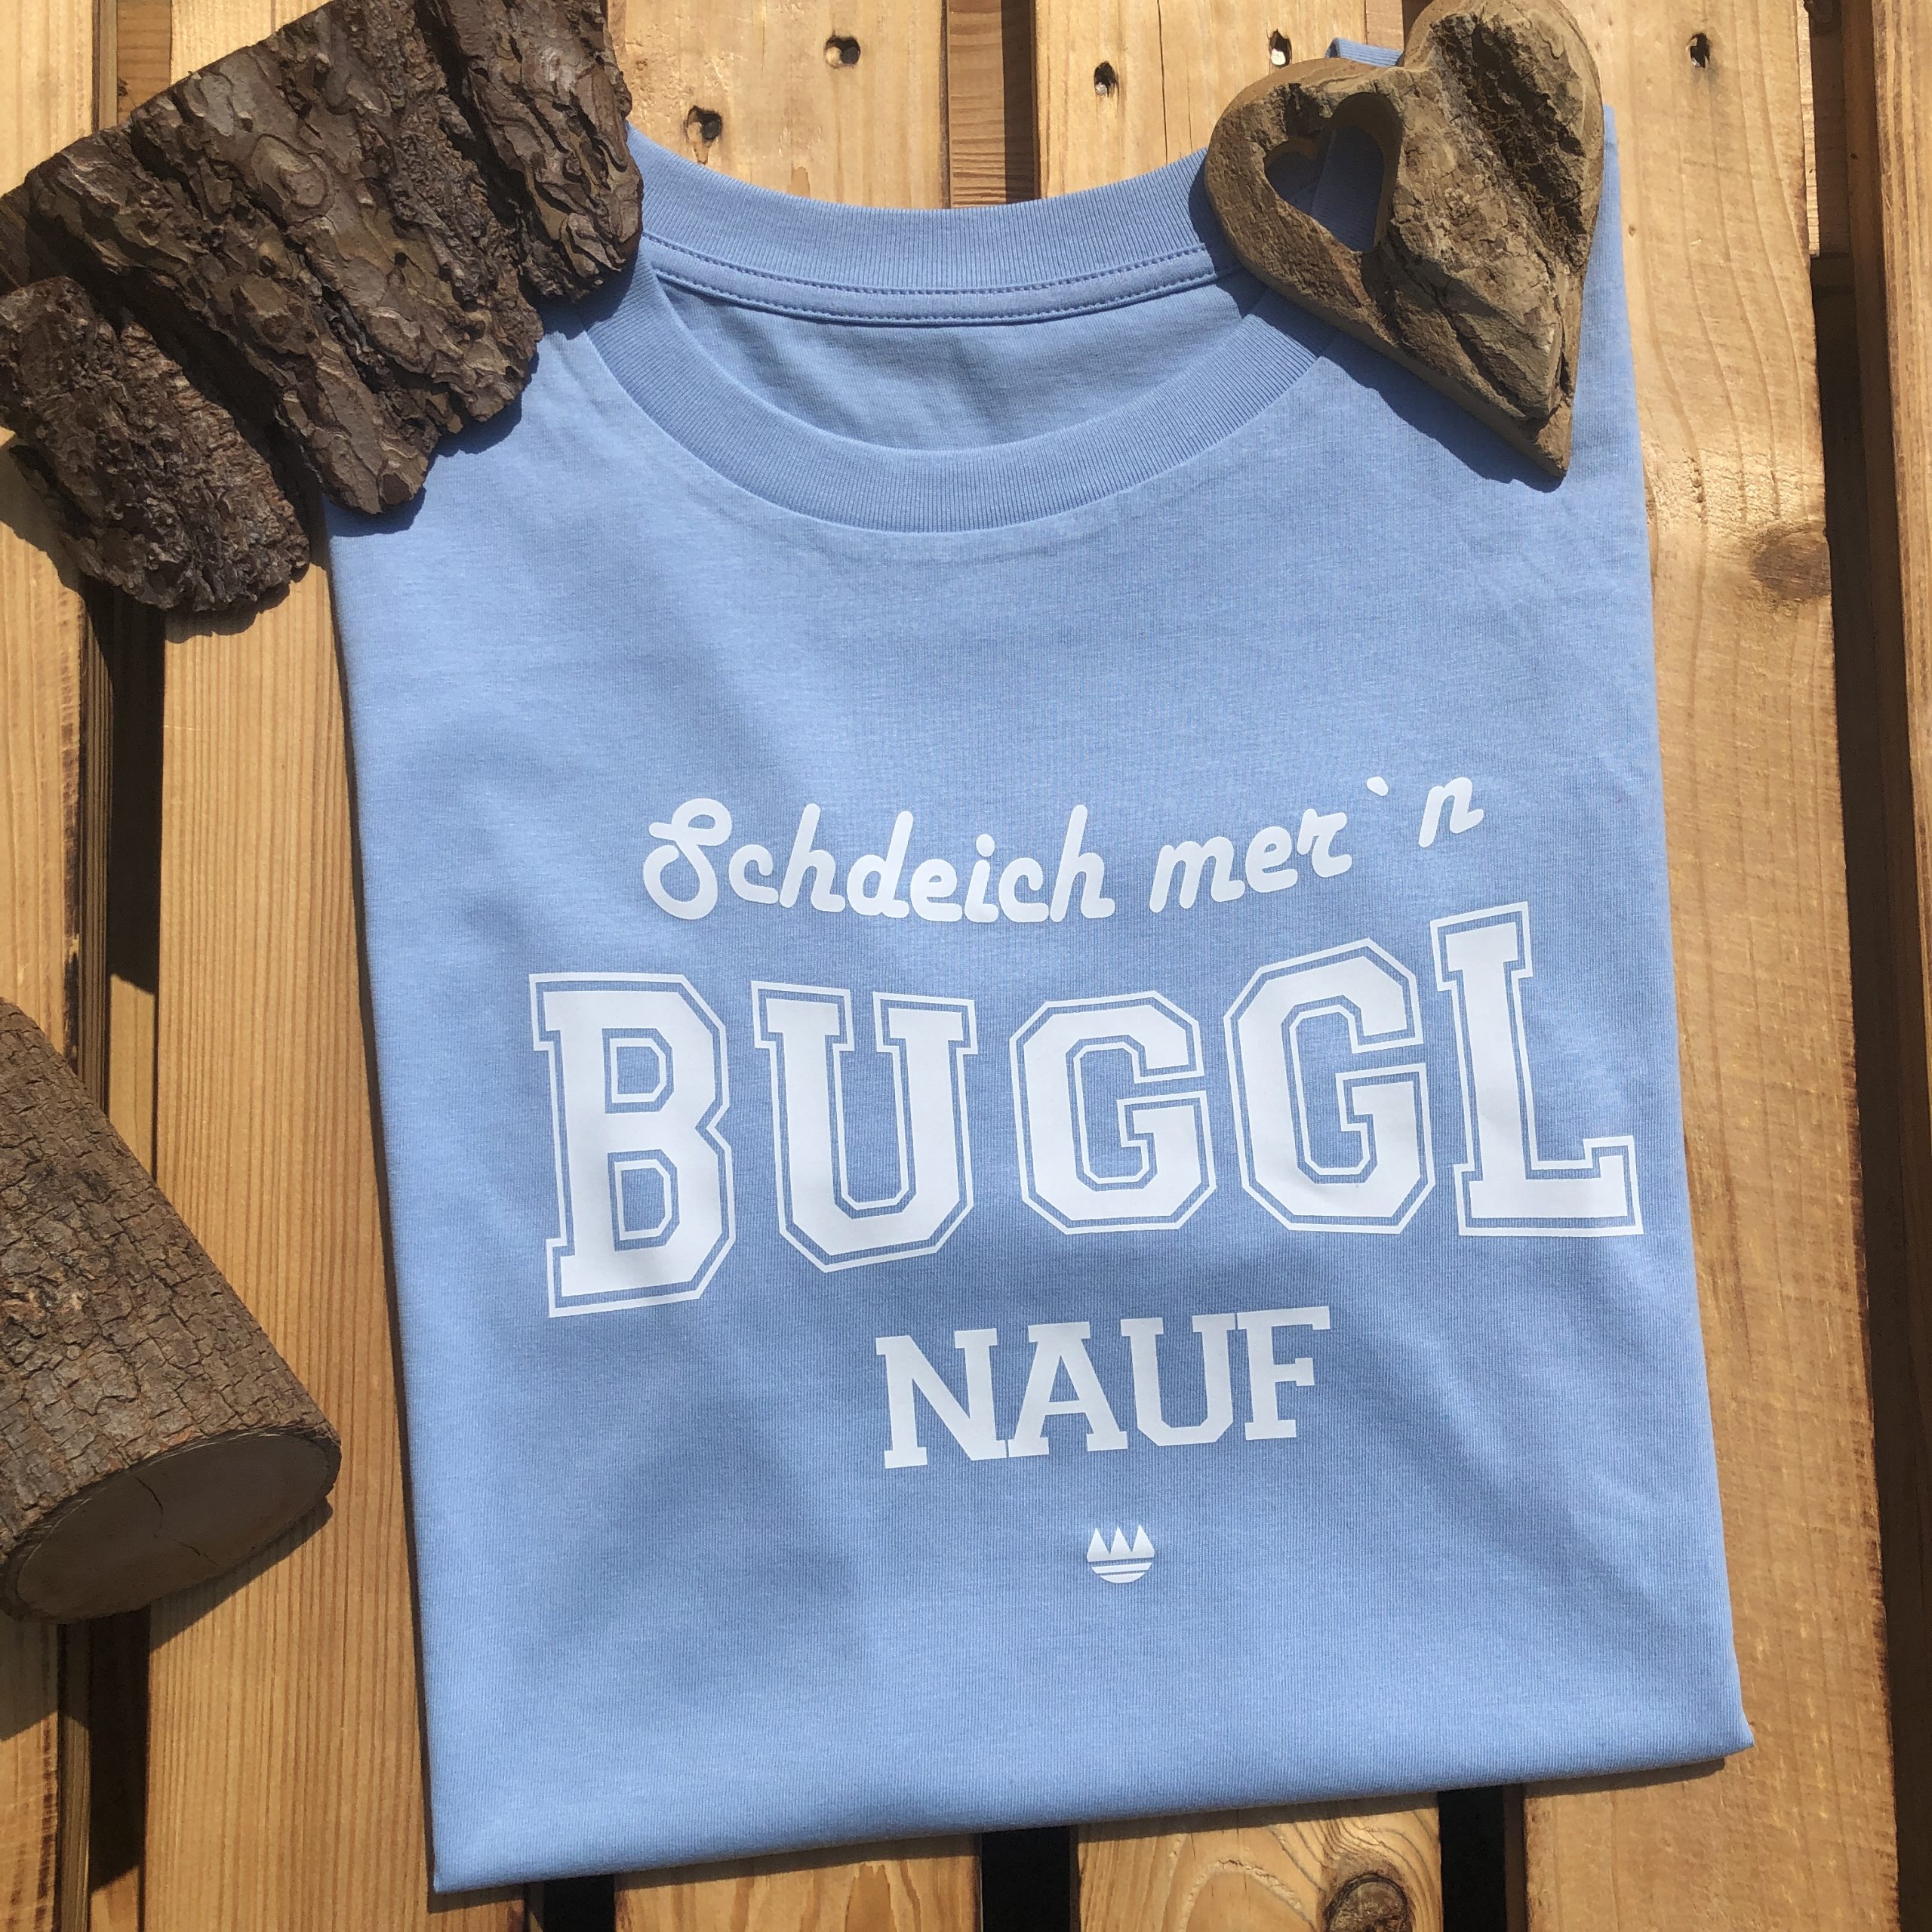 Schdeich mern Buggl nauf T-Shirt Frankenstyle Fränkische Damen T-Shirts Shop Erlangen